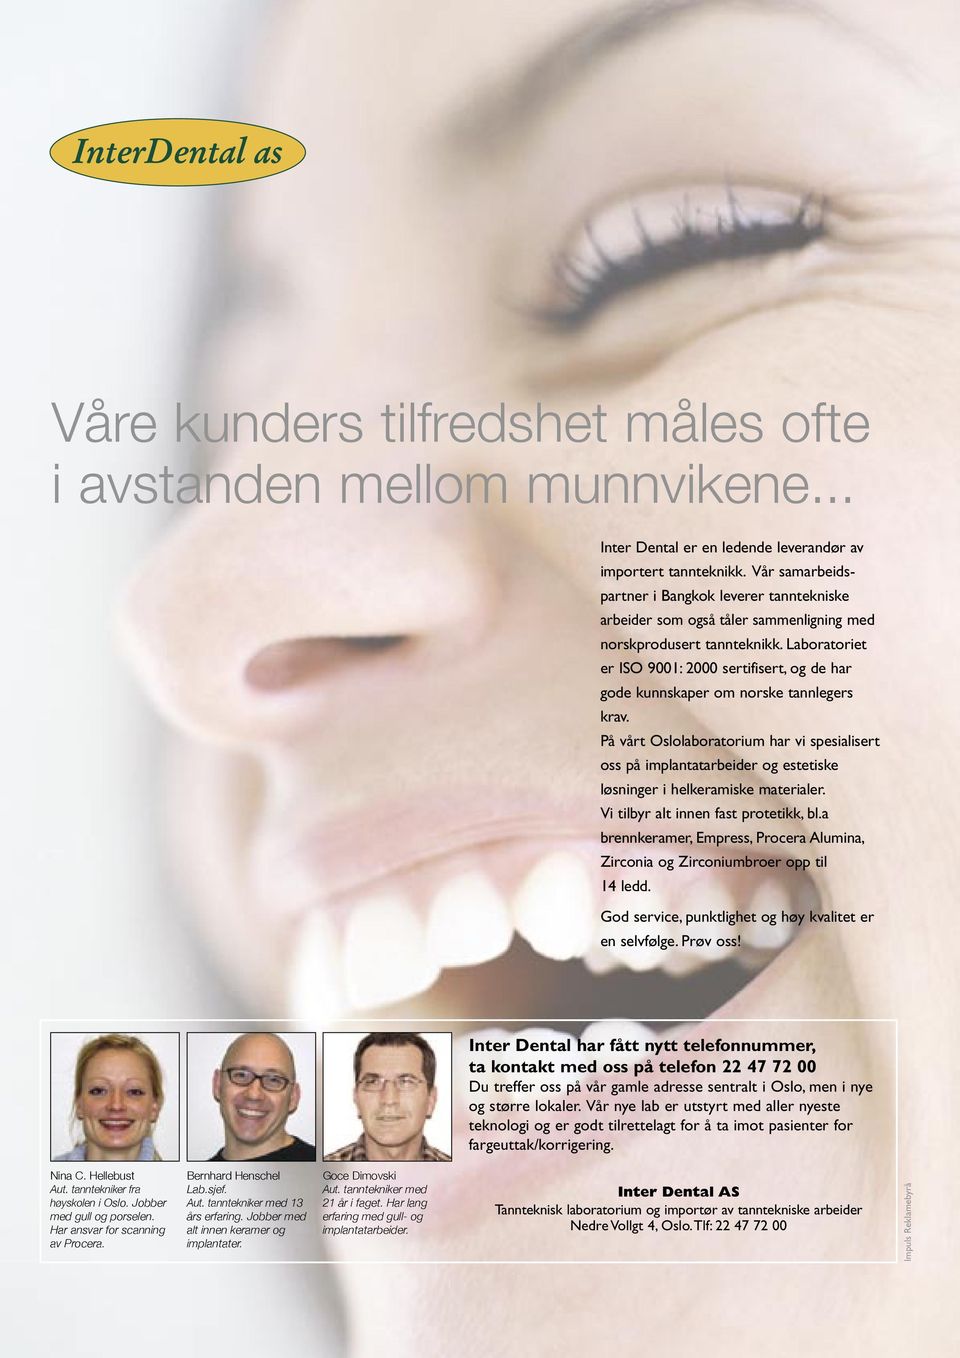 Laboratoriet er ISO 9001: 2000 sertifisert, og de har gode kunnskaper om norske tannlegers krav.